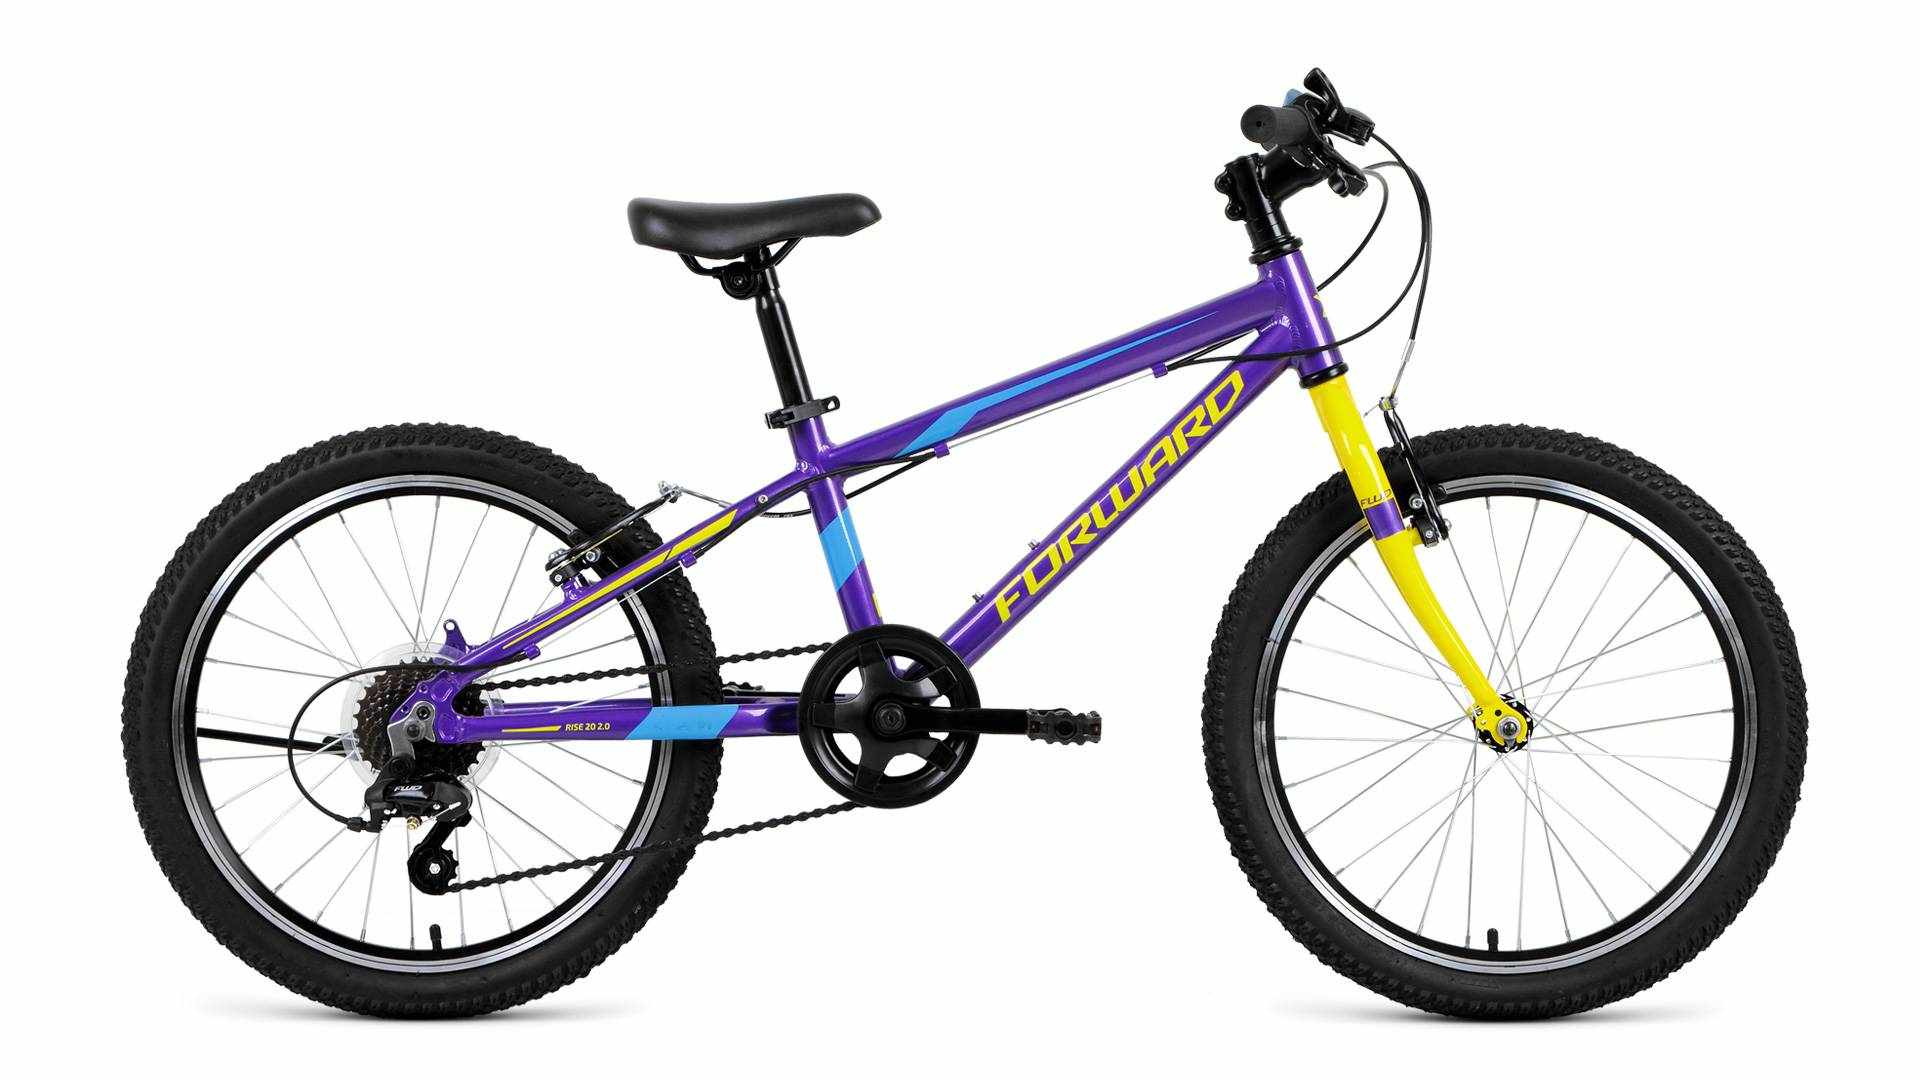 RISE 20 2.0 (рост 10.5") 2018-2019, фиолетовый/желтый, RBKW91607004 от Forward.bike